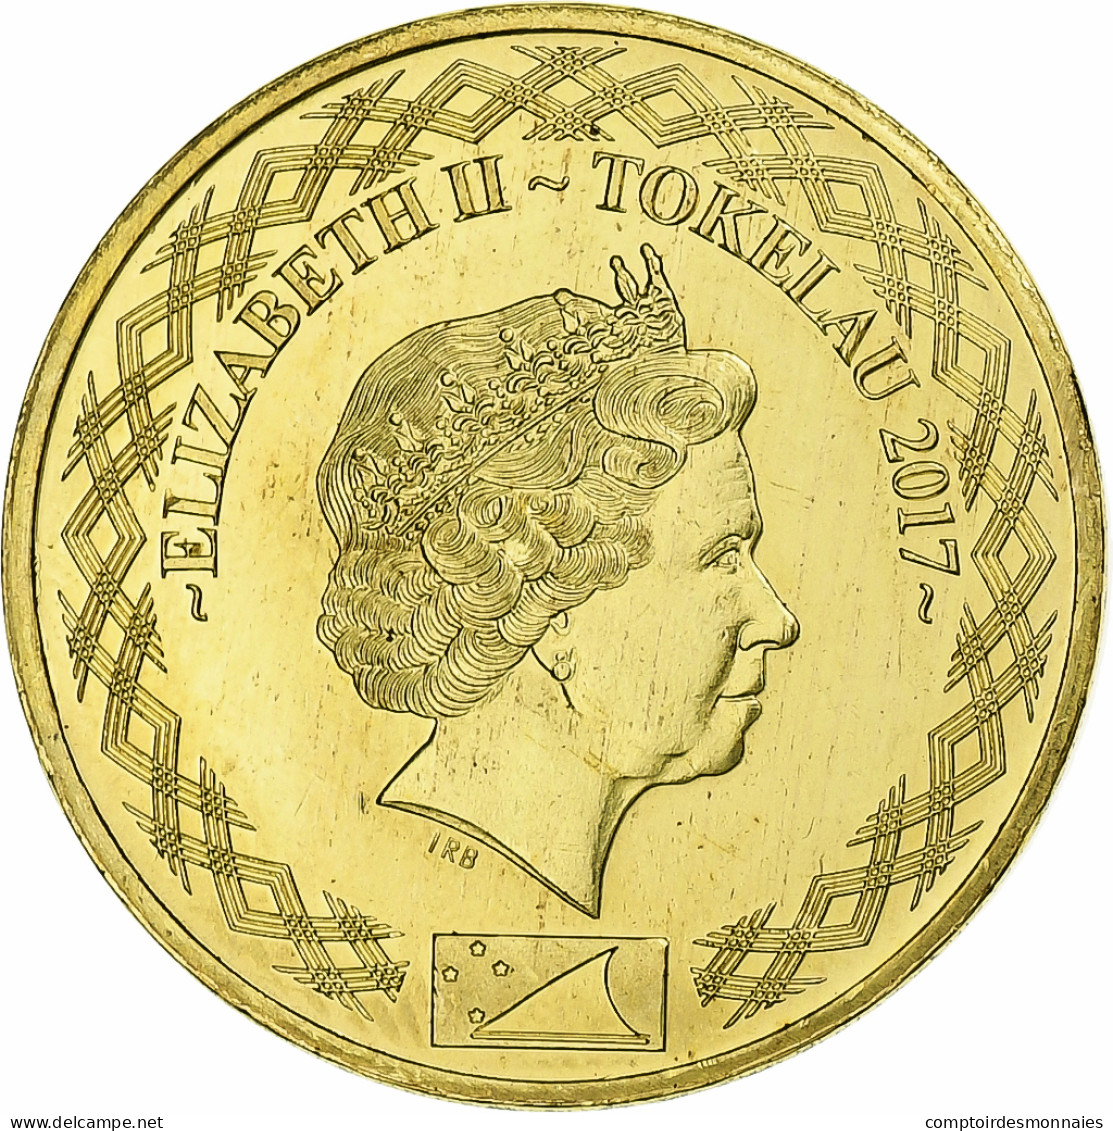 Tokelau, Dollar, 2017, Bronze-Aluminium, SPL - Neuseeland